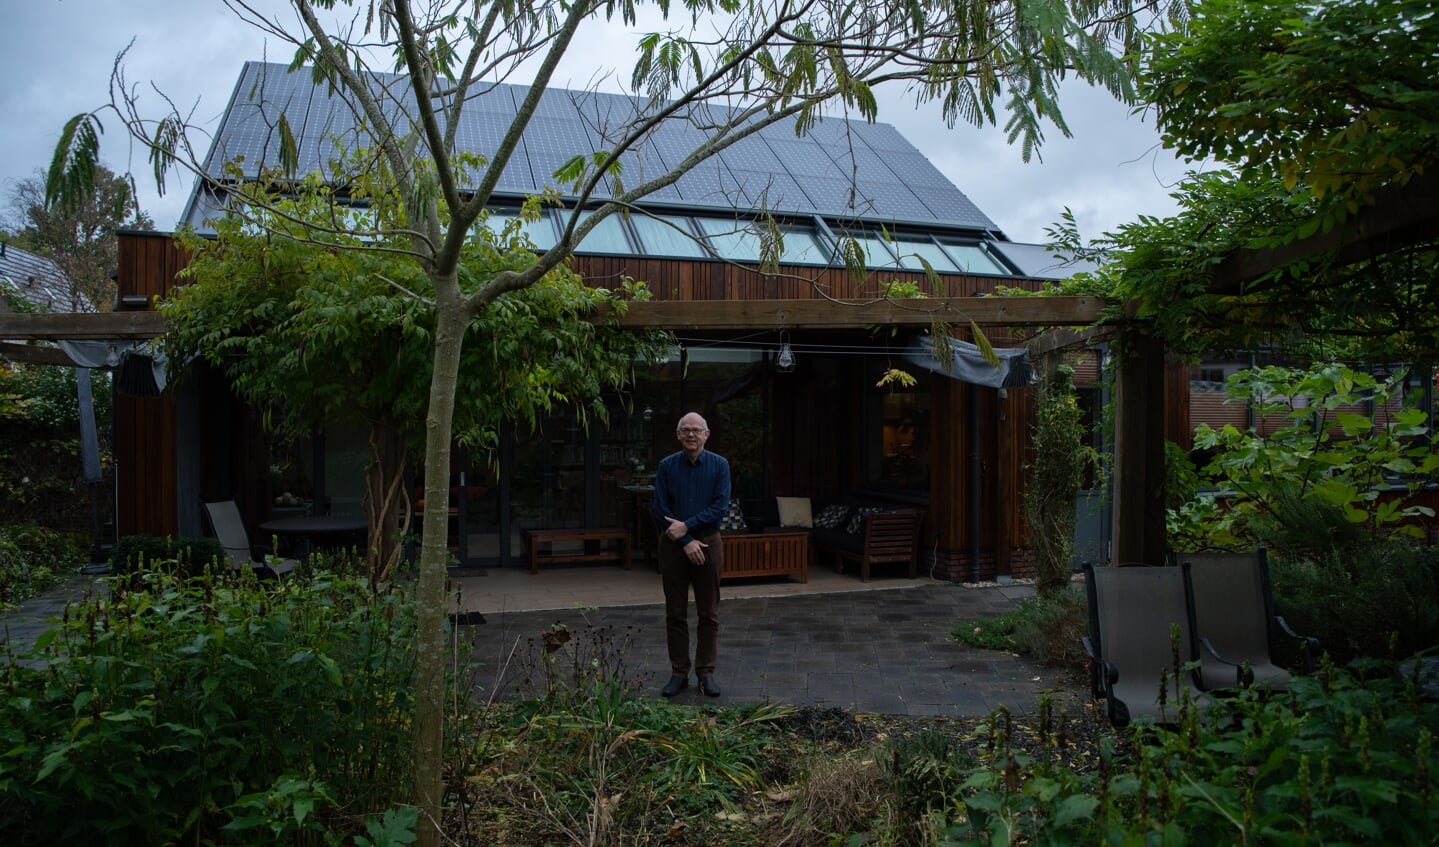 Eigenaar Peter Haring bij zijn huis, dat genomineerd is voor 'Duurzaamste Huis van Nederland'.